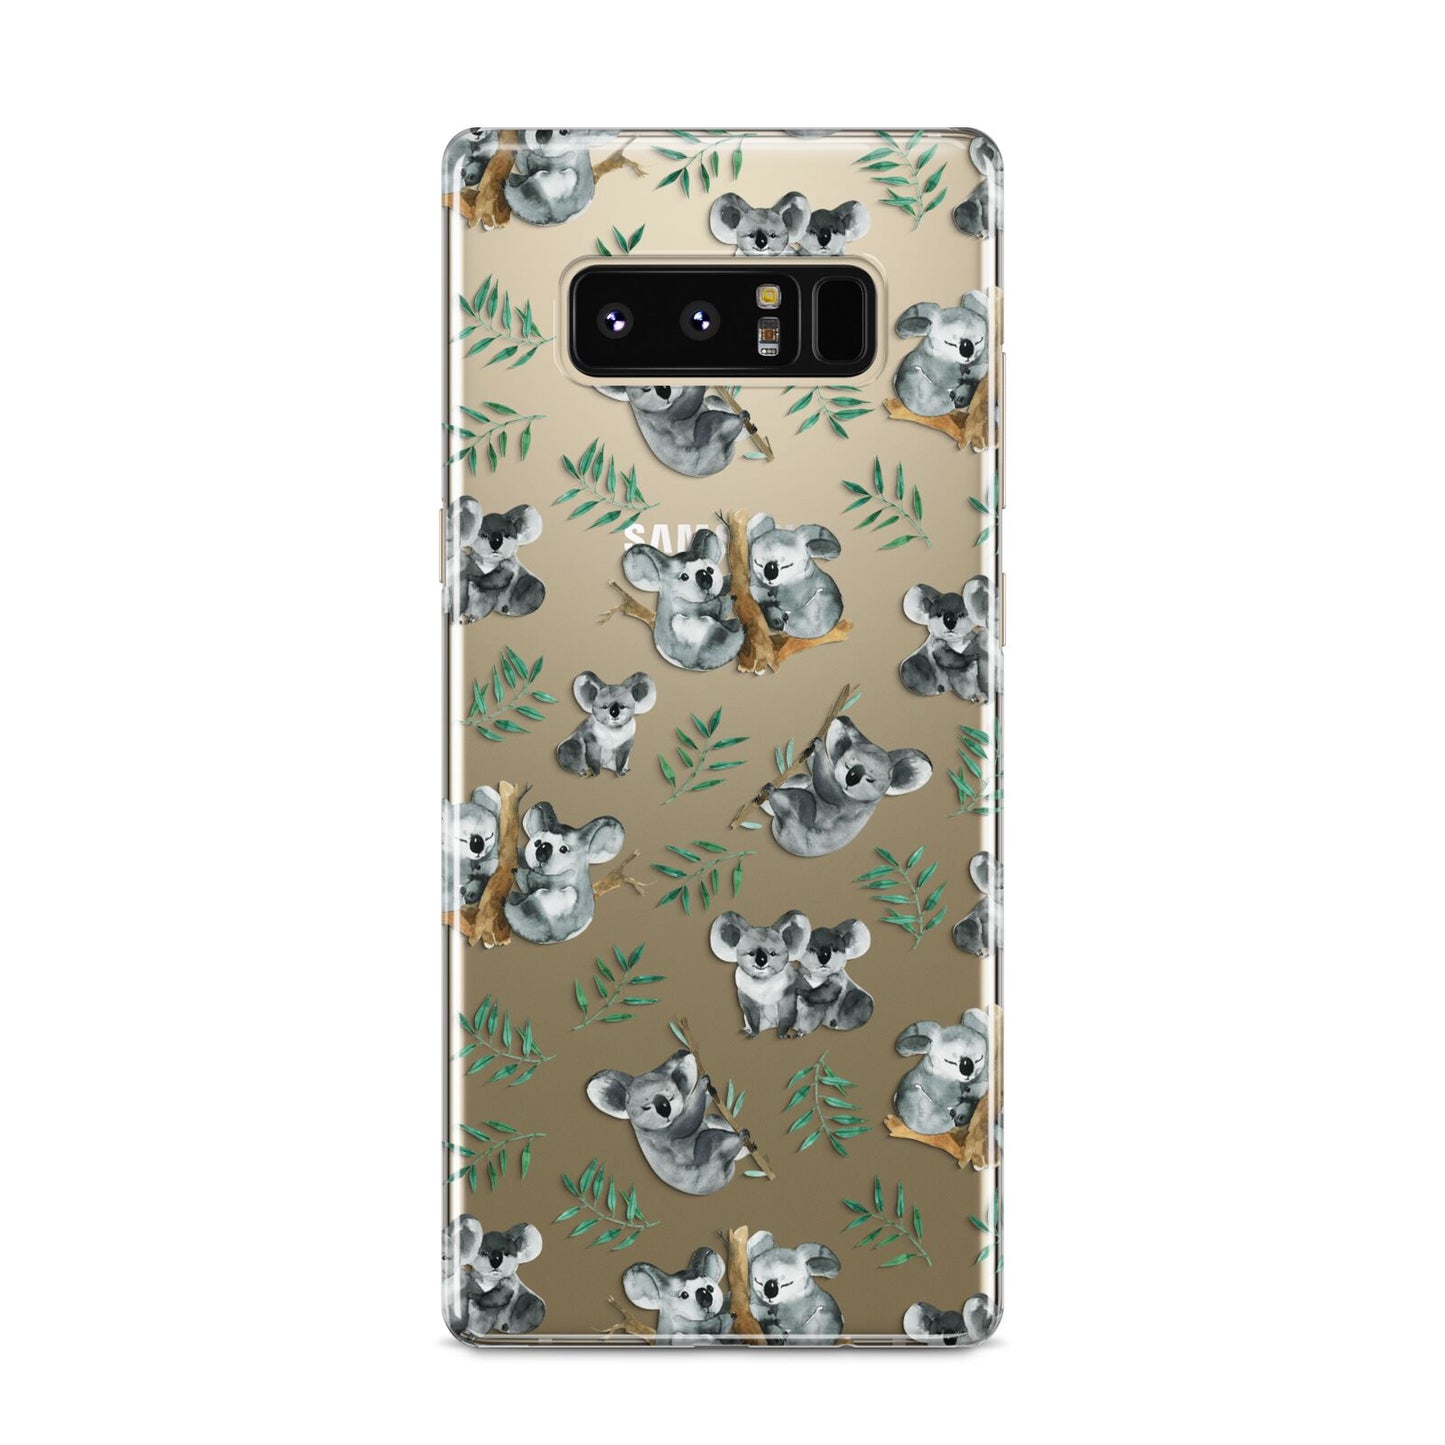 Koala Bear Samsung Galaxy S8 Case